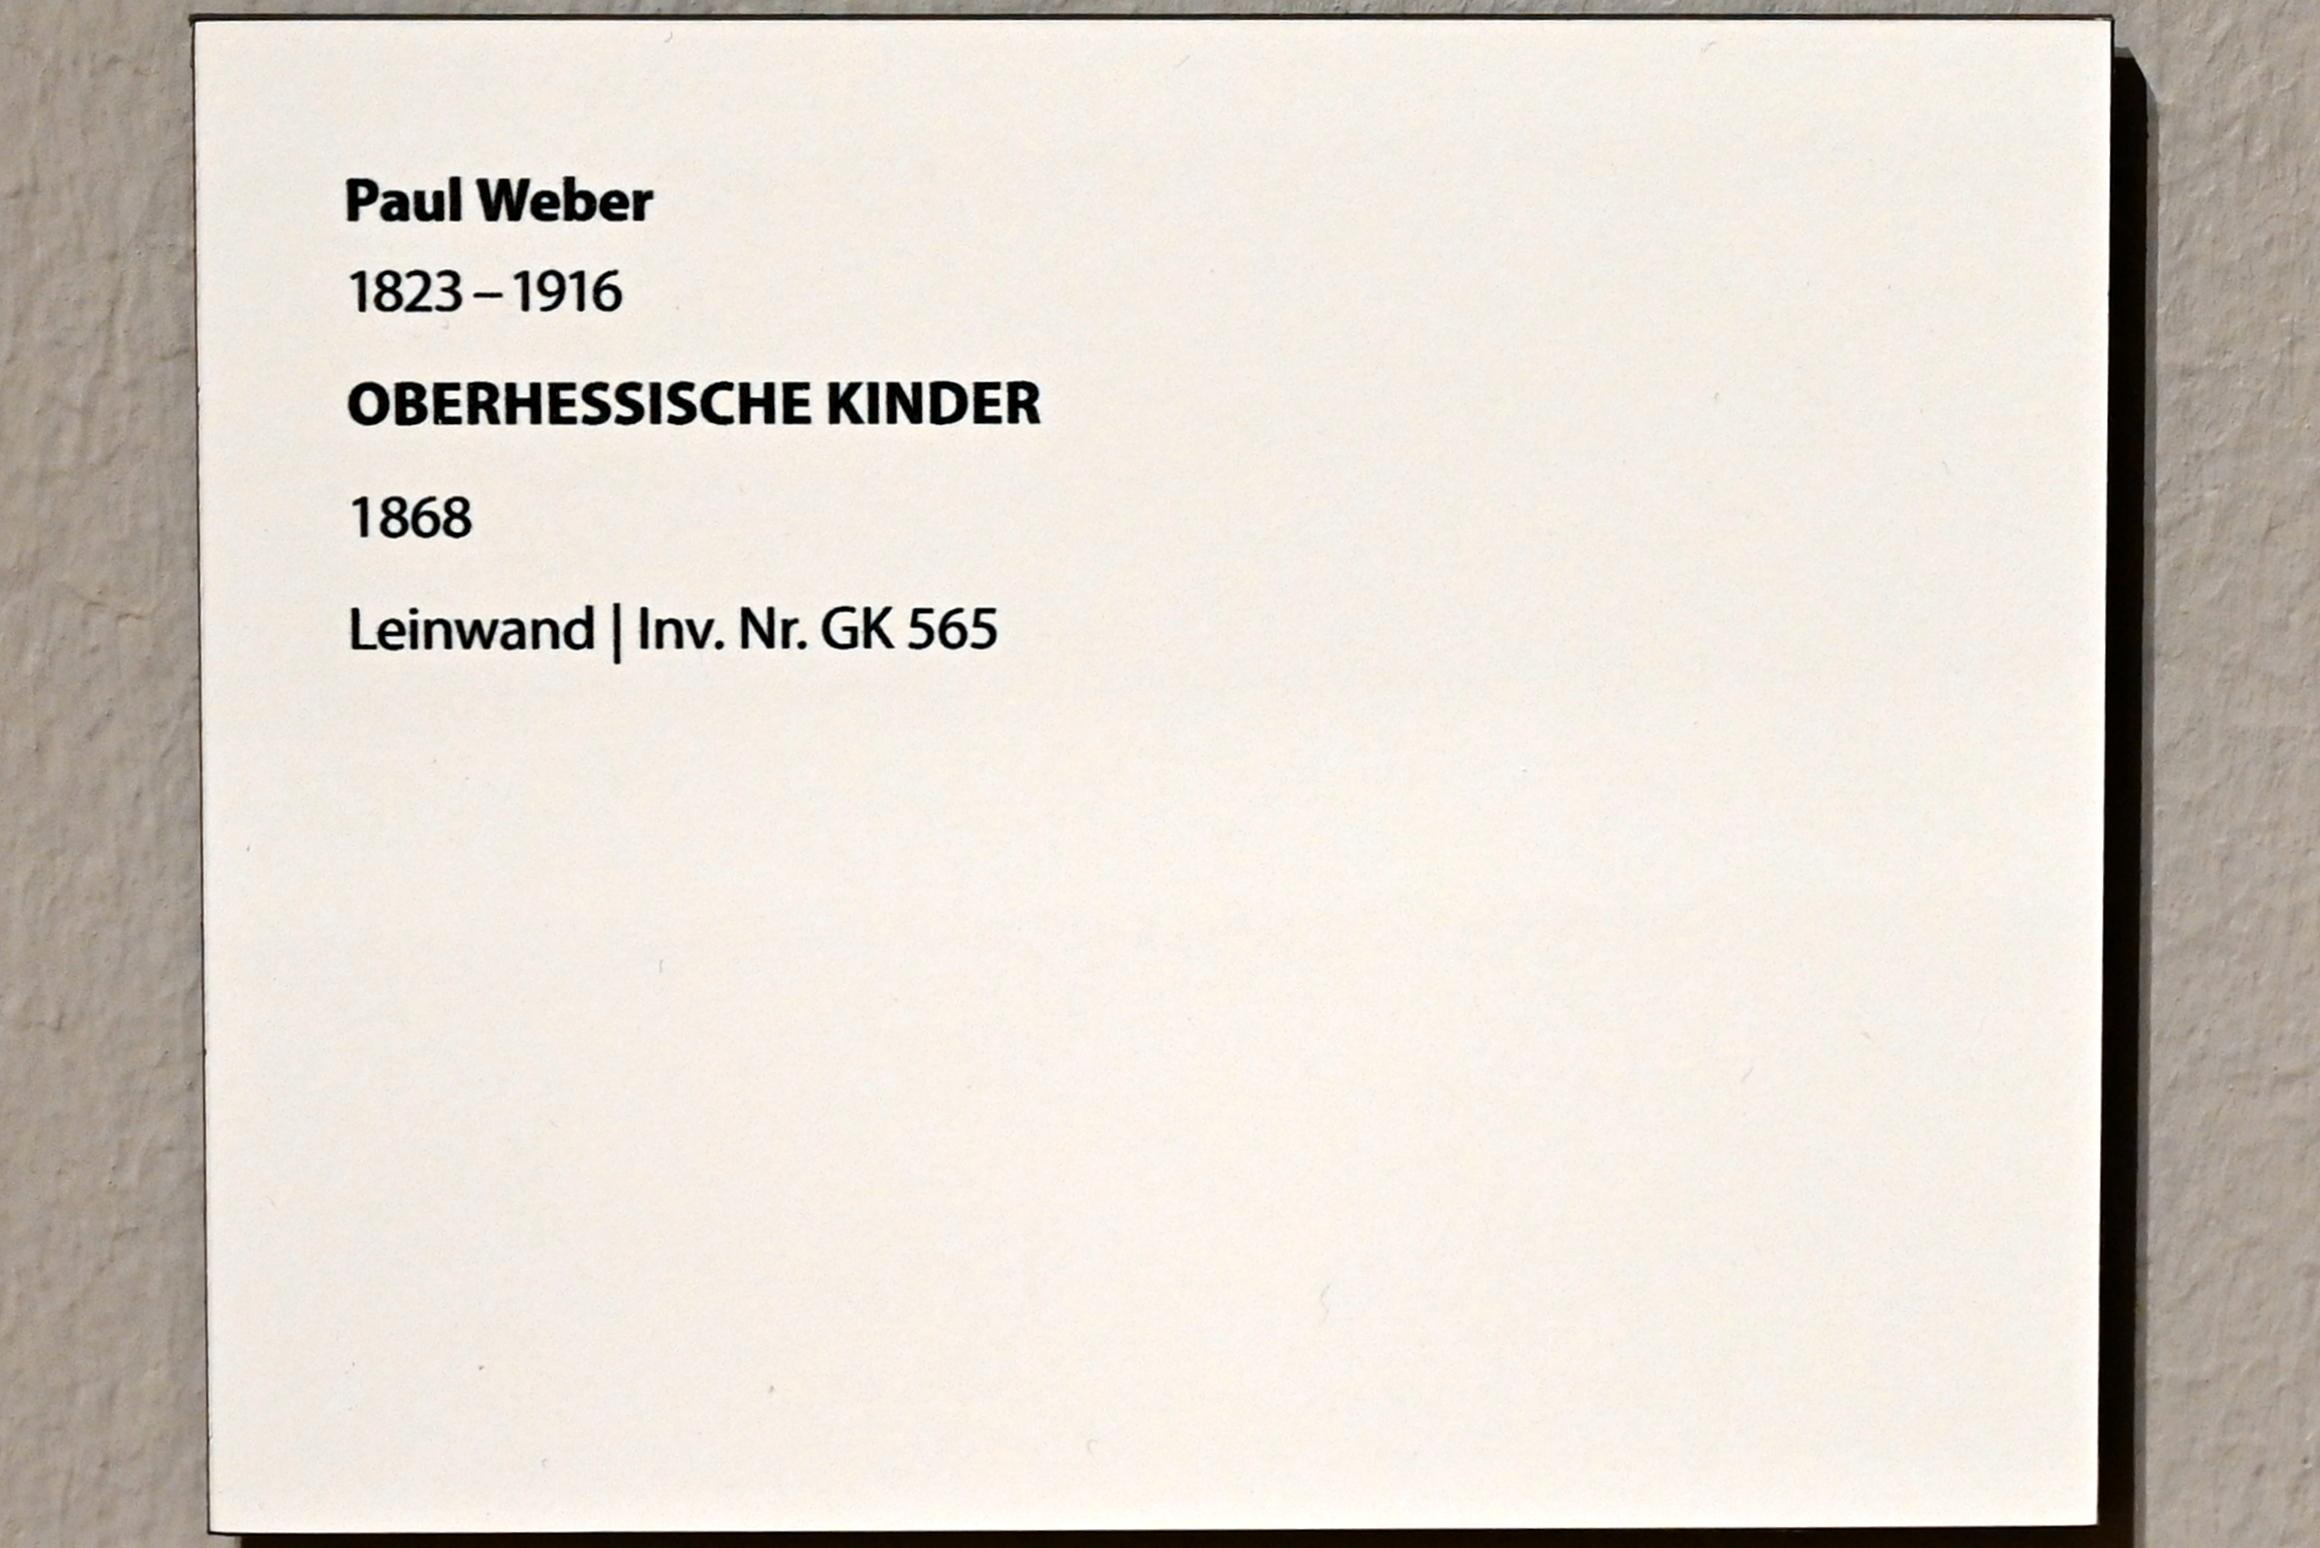 Paul Weber (1868), Oberhessische Kinder, Darmstadt, Hessisches Landesmuseum, Saal 7, 1868, Bild 2/2